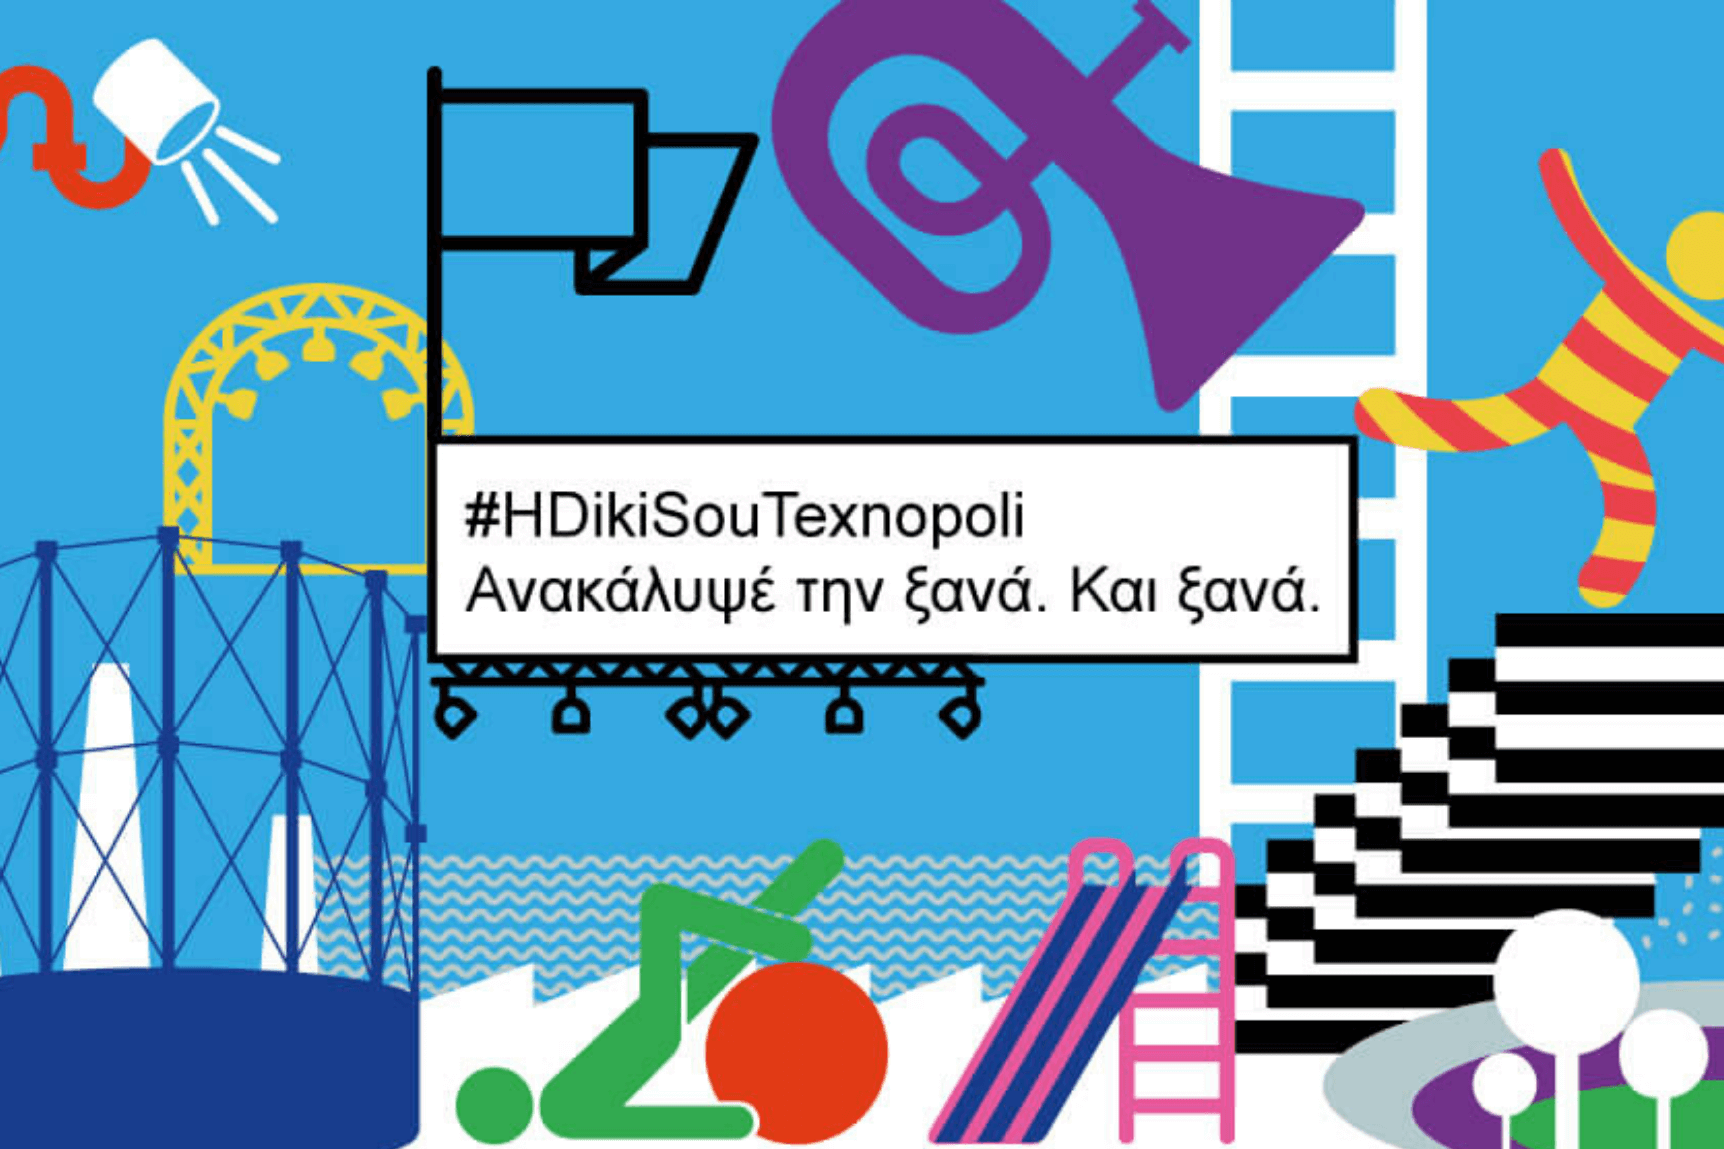 Χορηγία βερνικιών & χρωμάτων στην Τεχνόπολη! #HDikiSouTexnopoli